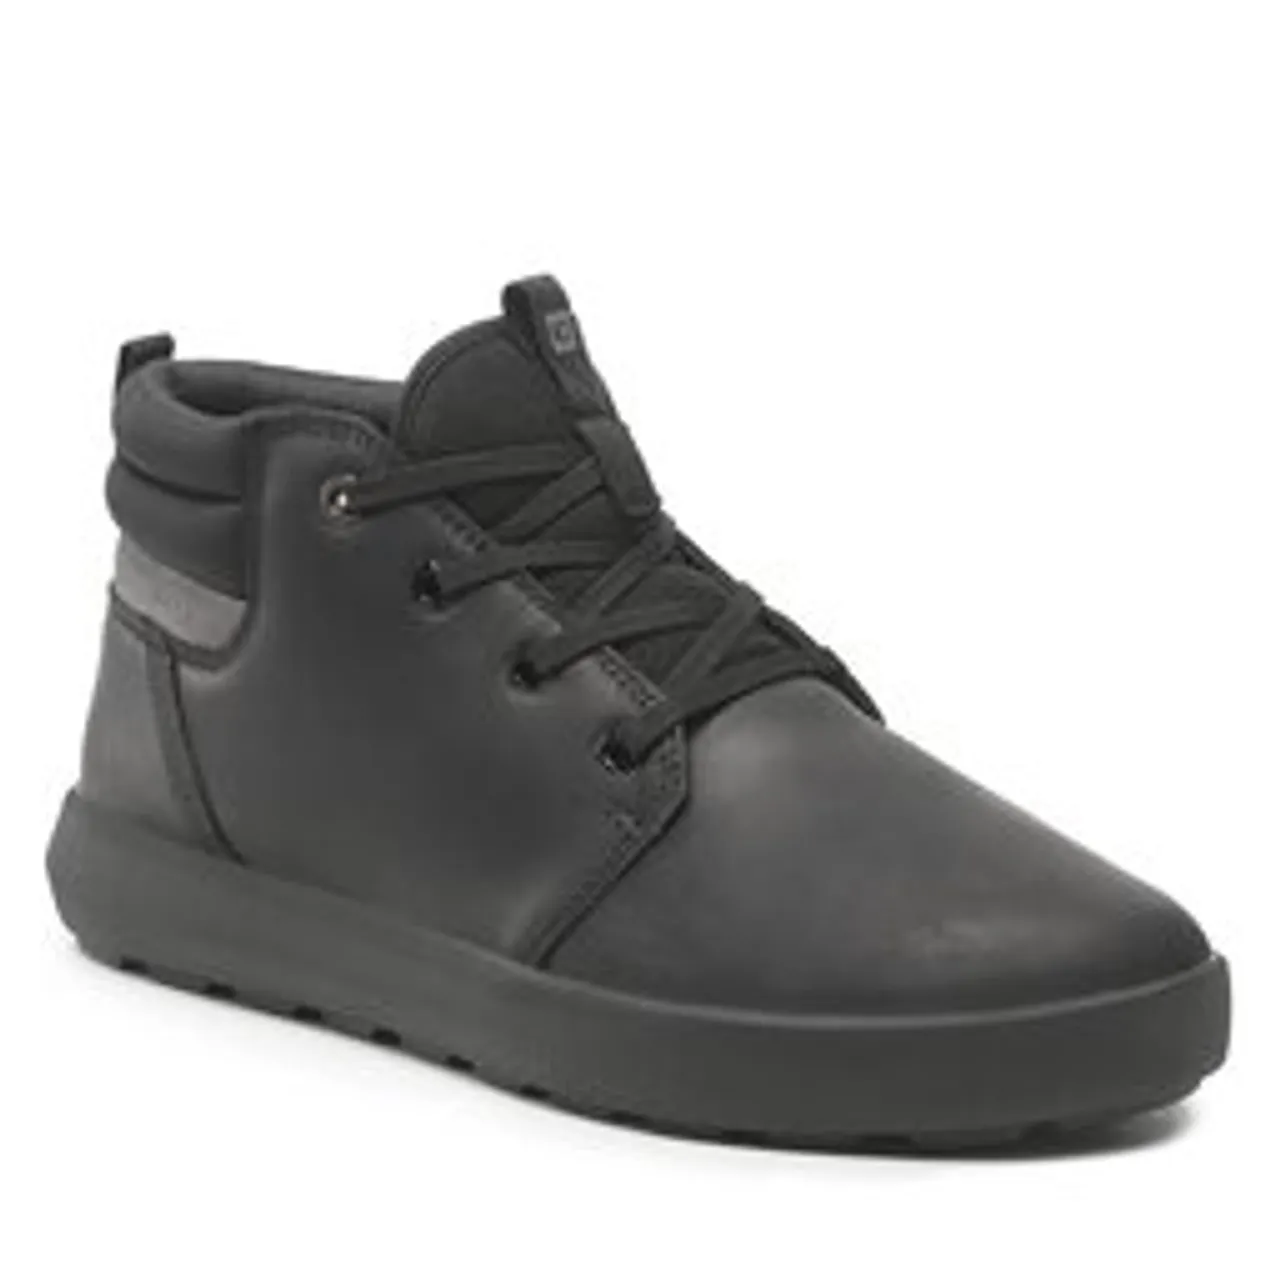 Sneakers CATerpillar Proxy Mid Fleece P110571 Black